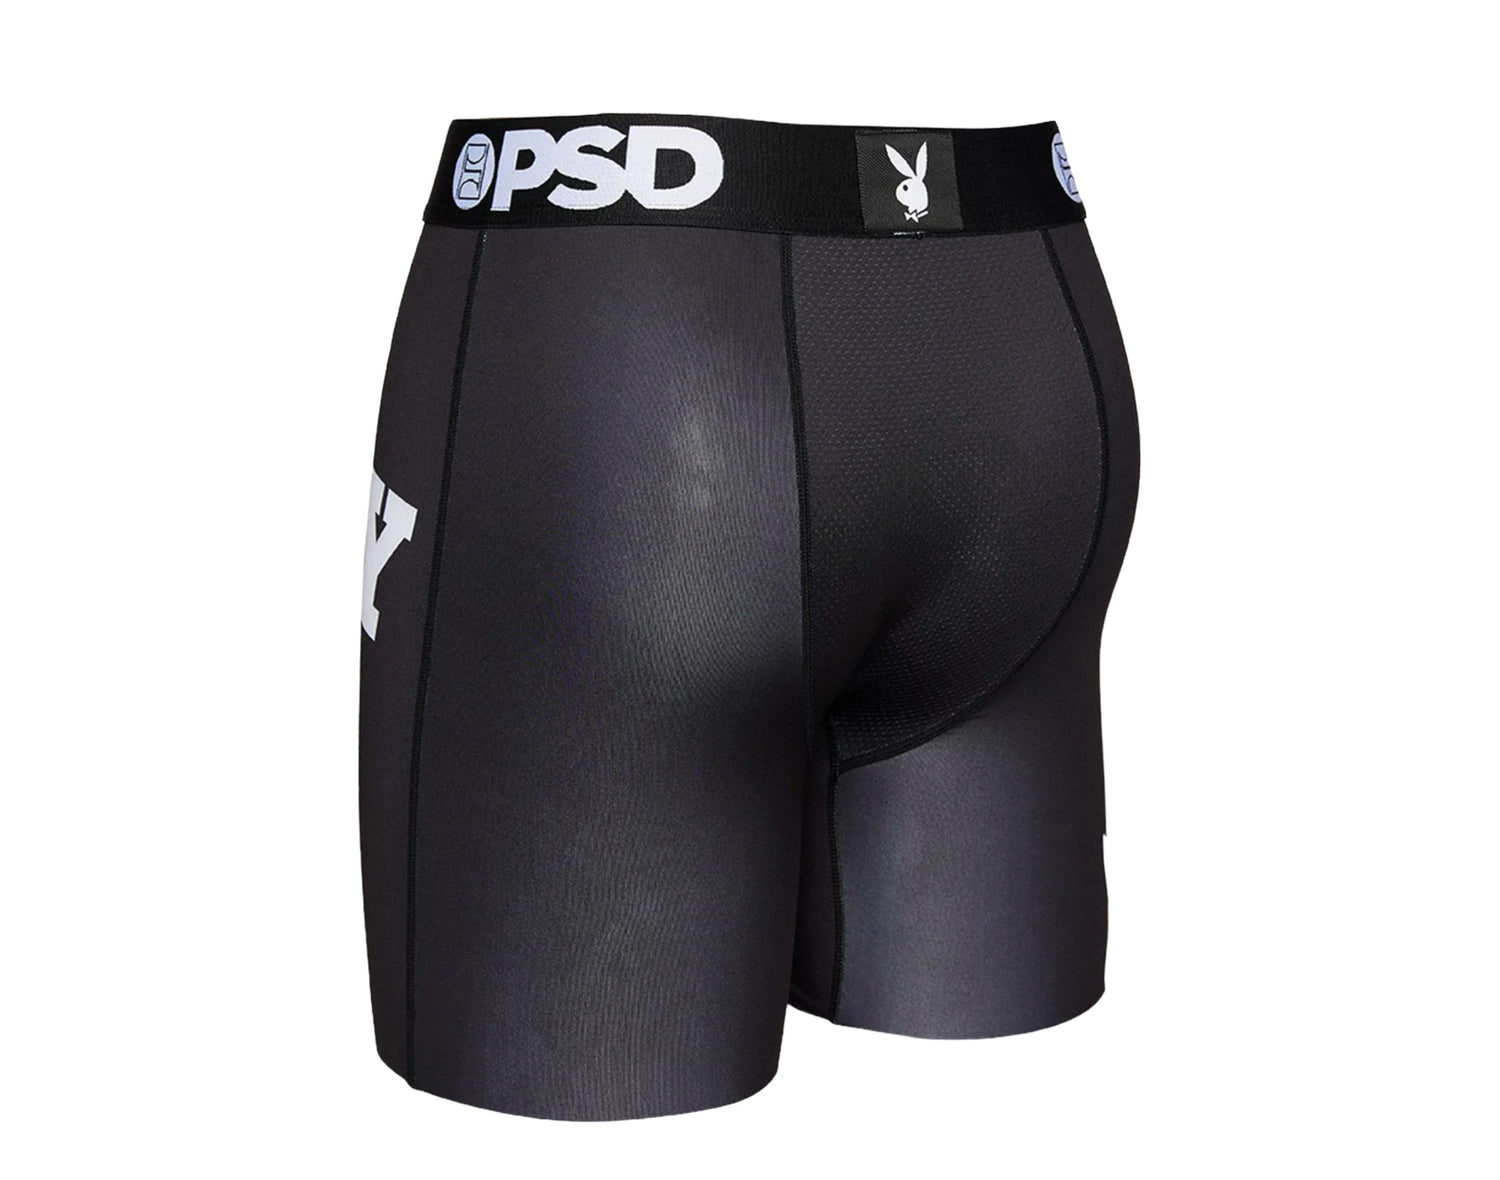 PSD x Playboy - Logo Briefs Men's Underwear